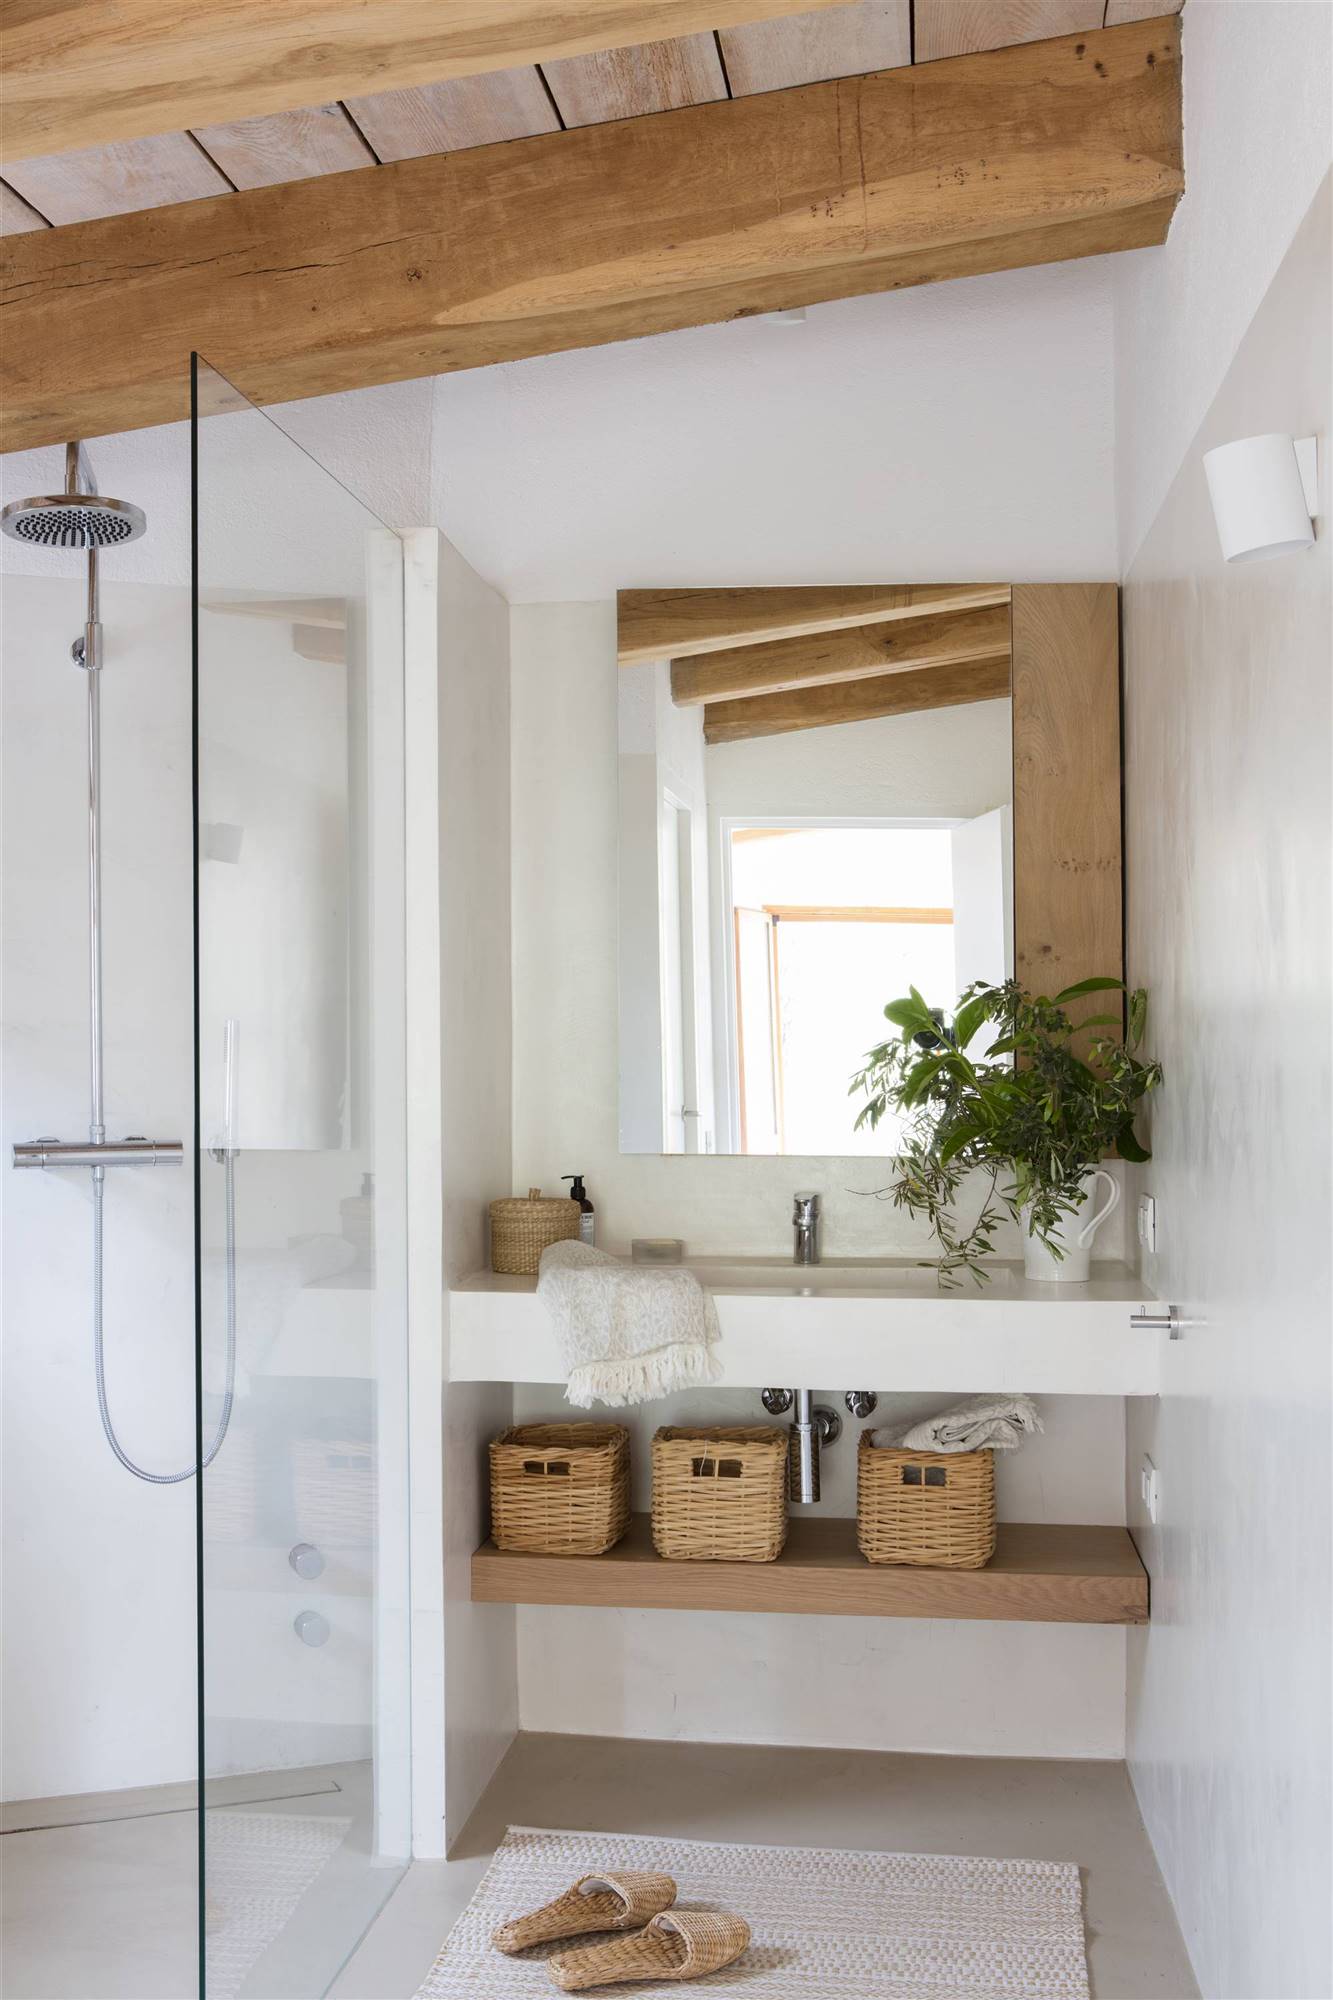 Reforma de baño con microcemento, espejo, estante de madera y ducha con mampara.